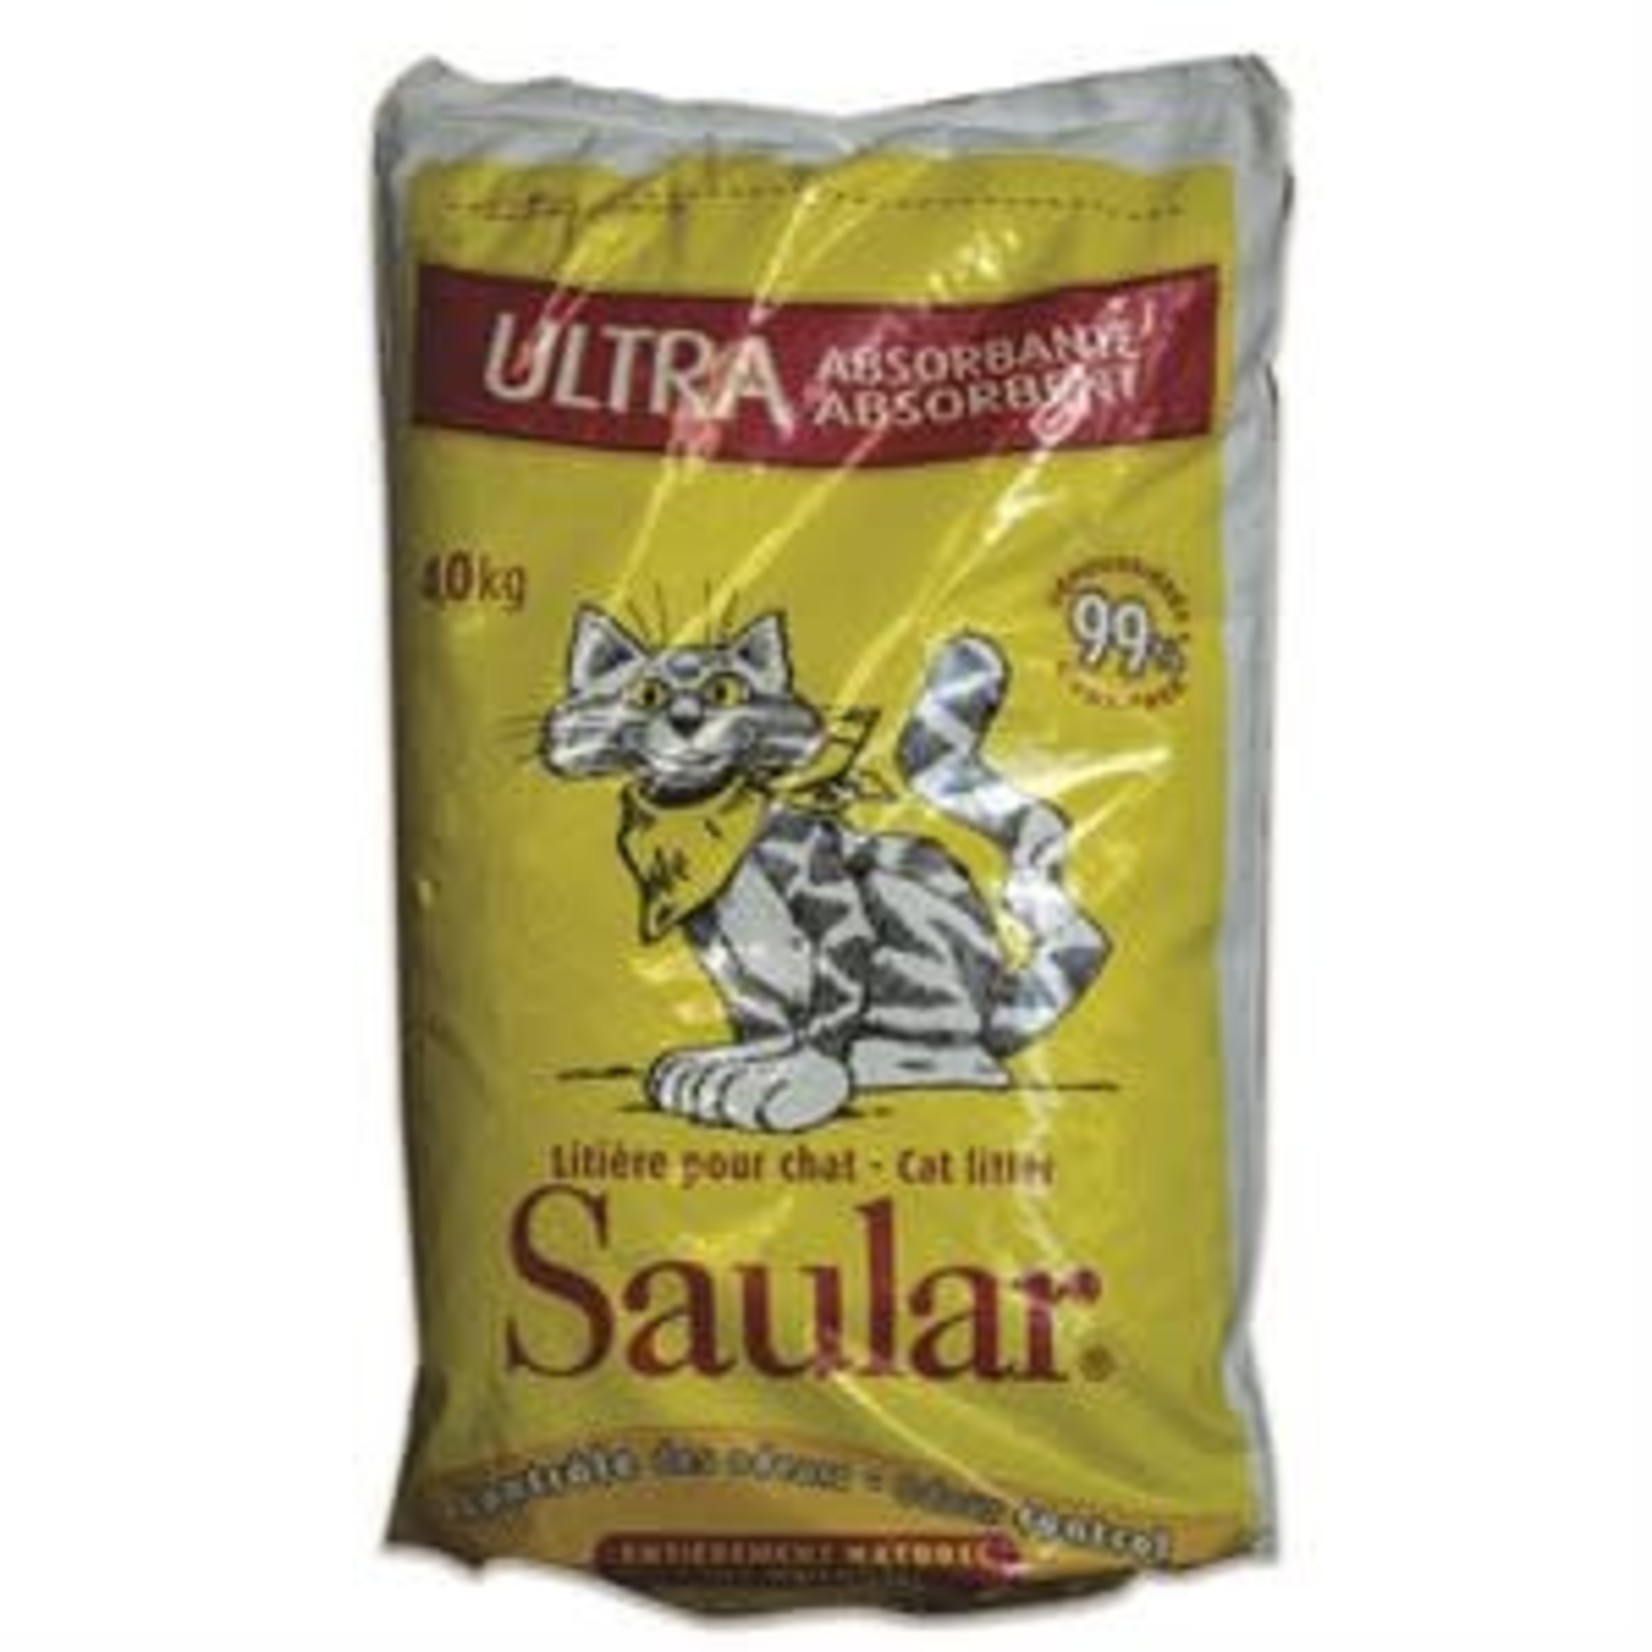 SAULAR UNSCENTED CAT LITTER 4KG